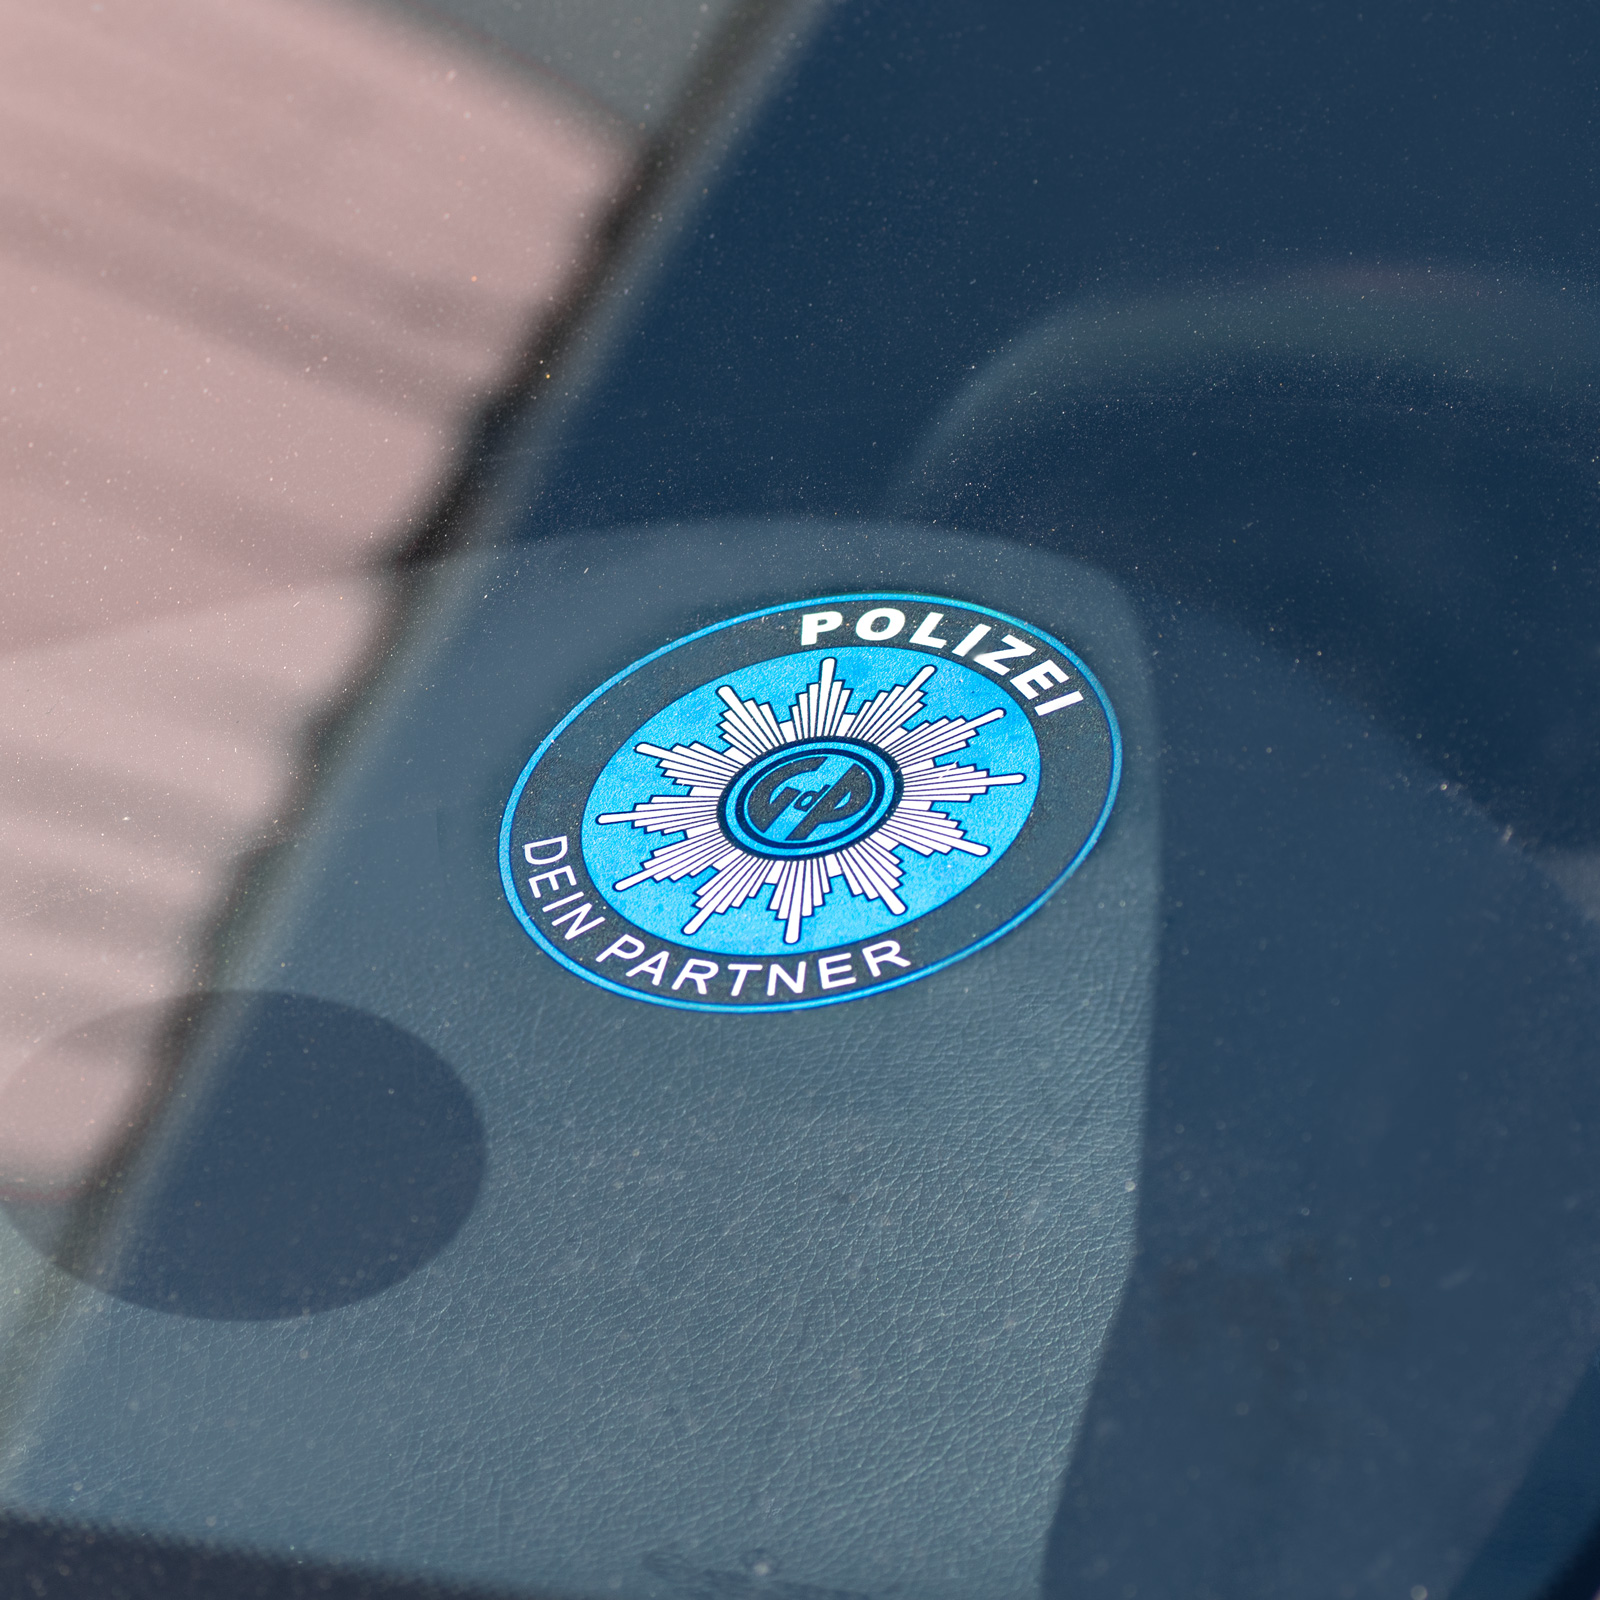 Polizei GDP Aufkleber Innen Knöllchenstop Gewerkschaft Sticker Blau